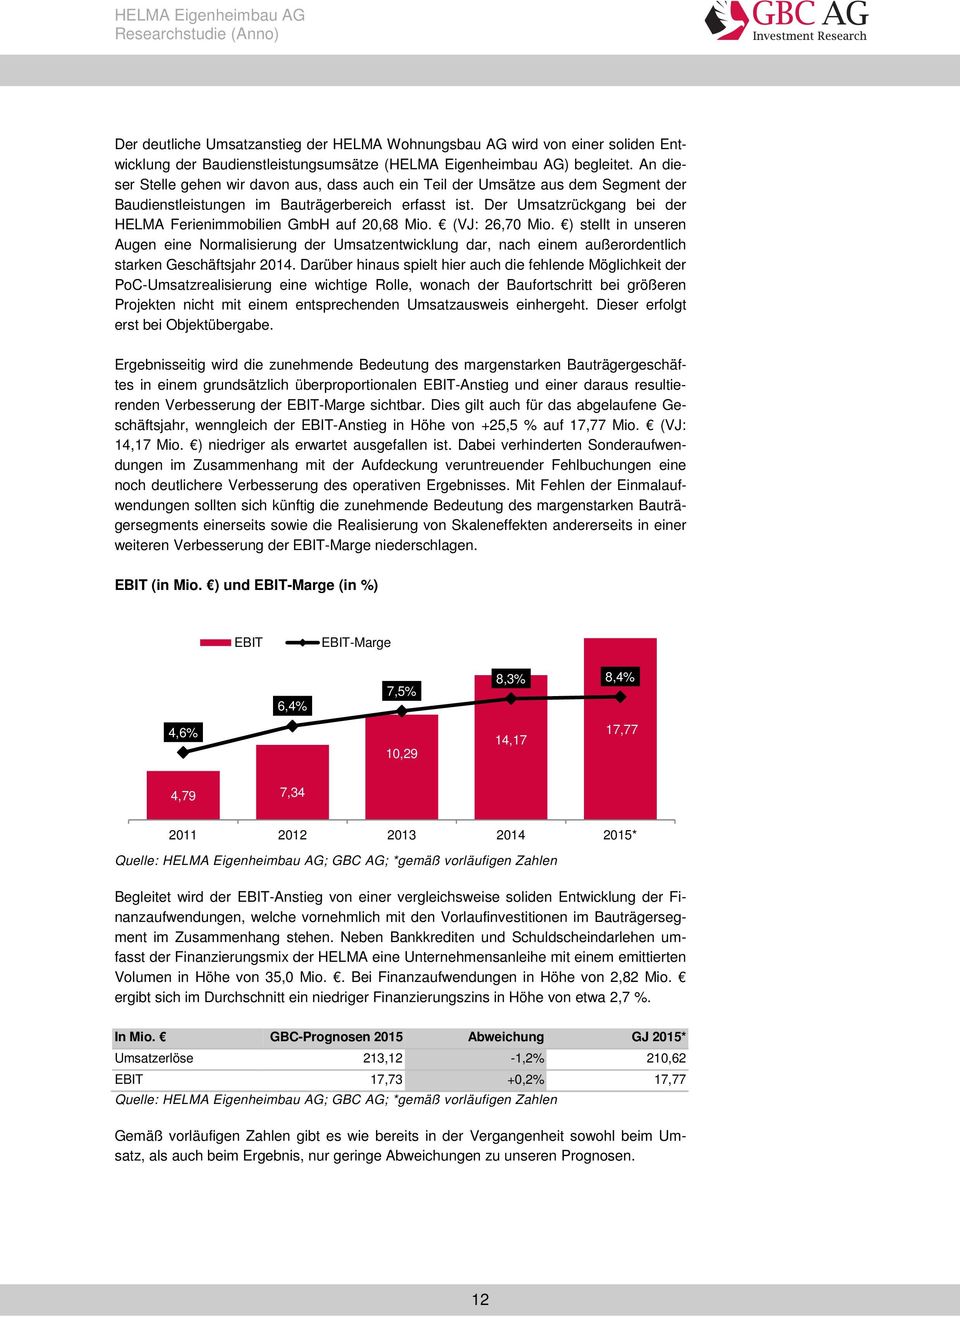 Der Umsatzrückgang bei der HELMA Ferienimmobilien GmbH auf 20,68 Mio. (VJ: 26,70 Mio.